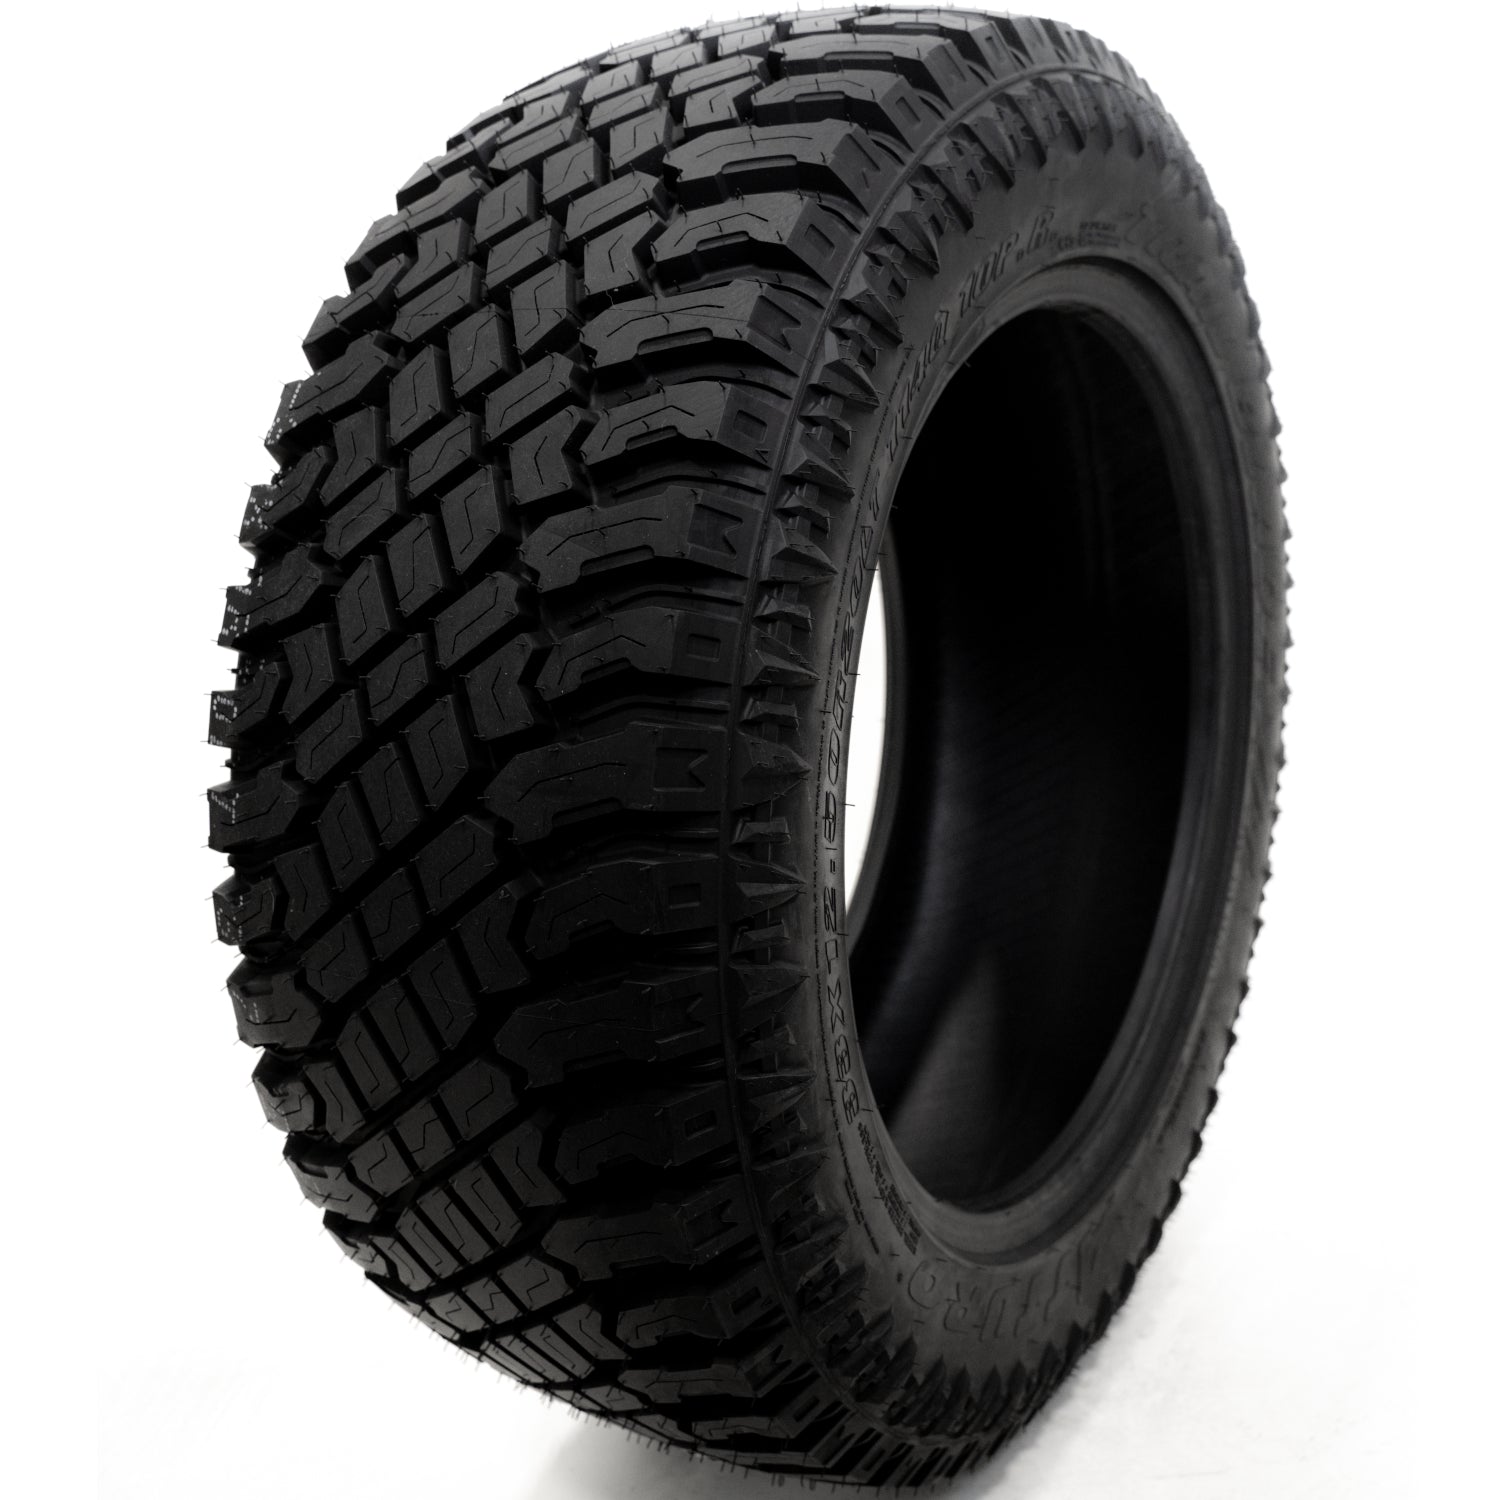 ATTURO TRAIL BLADE XT LT305/55R20 (33.5X12R 20) Tires